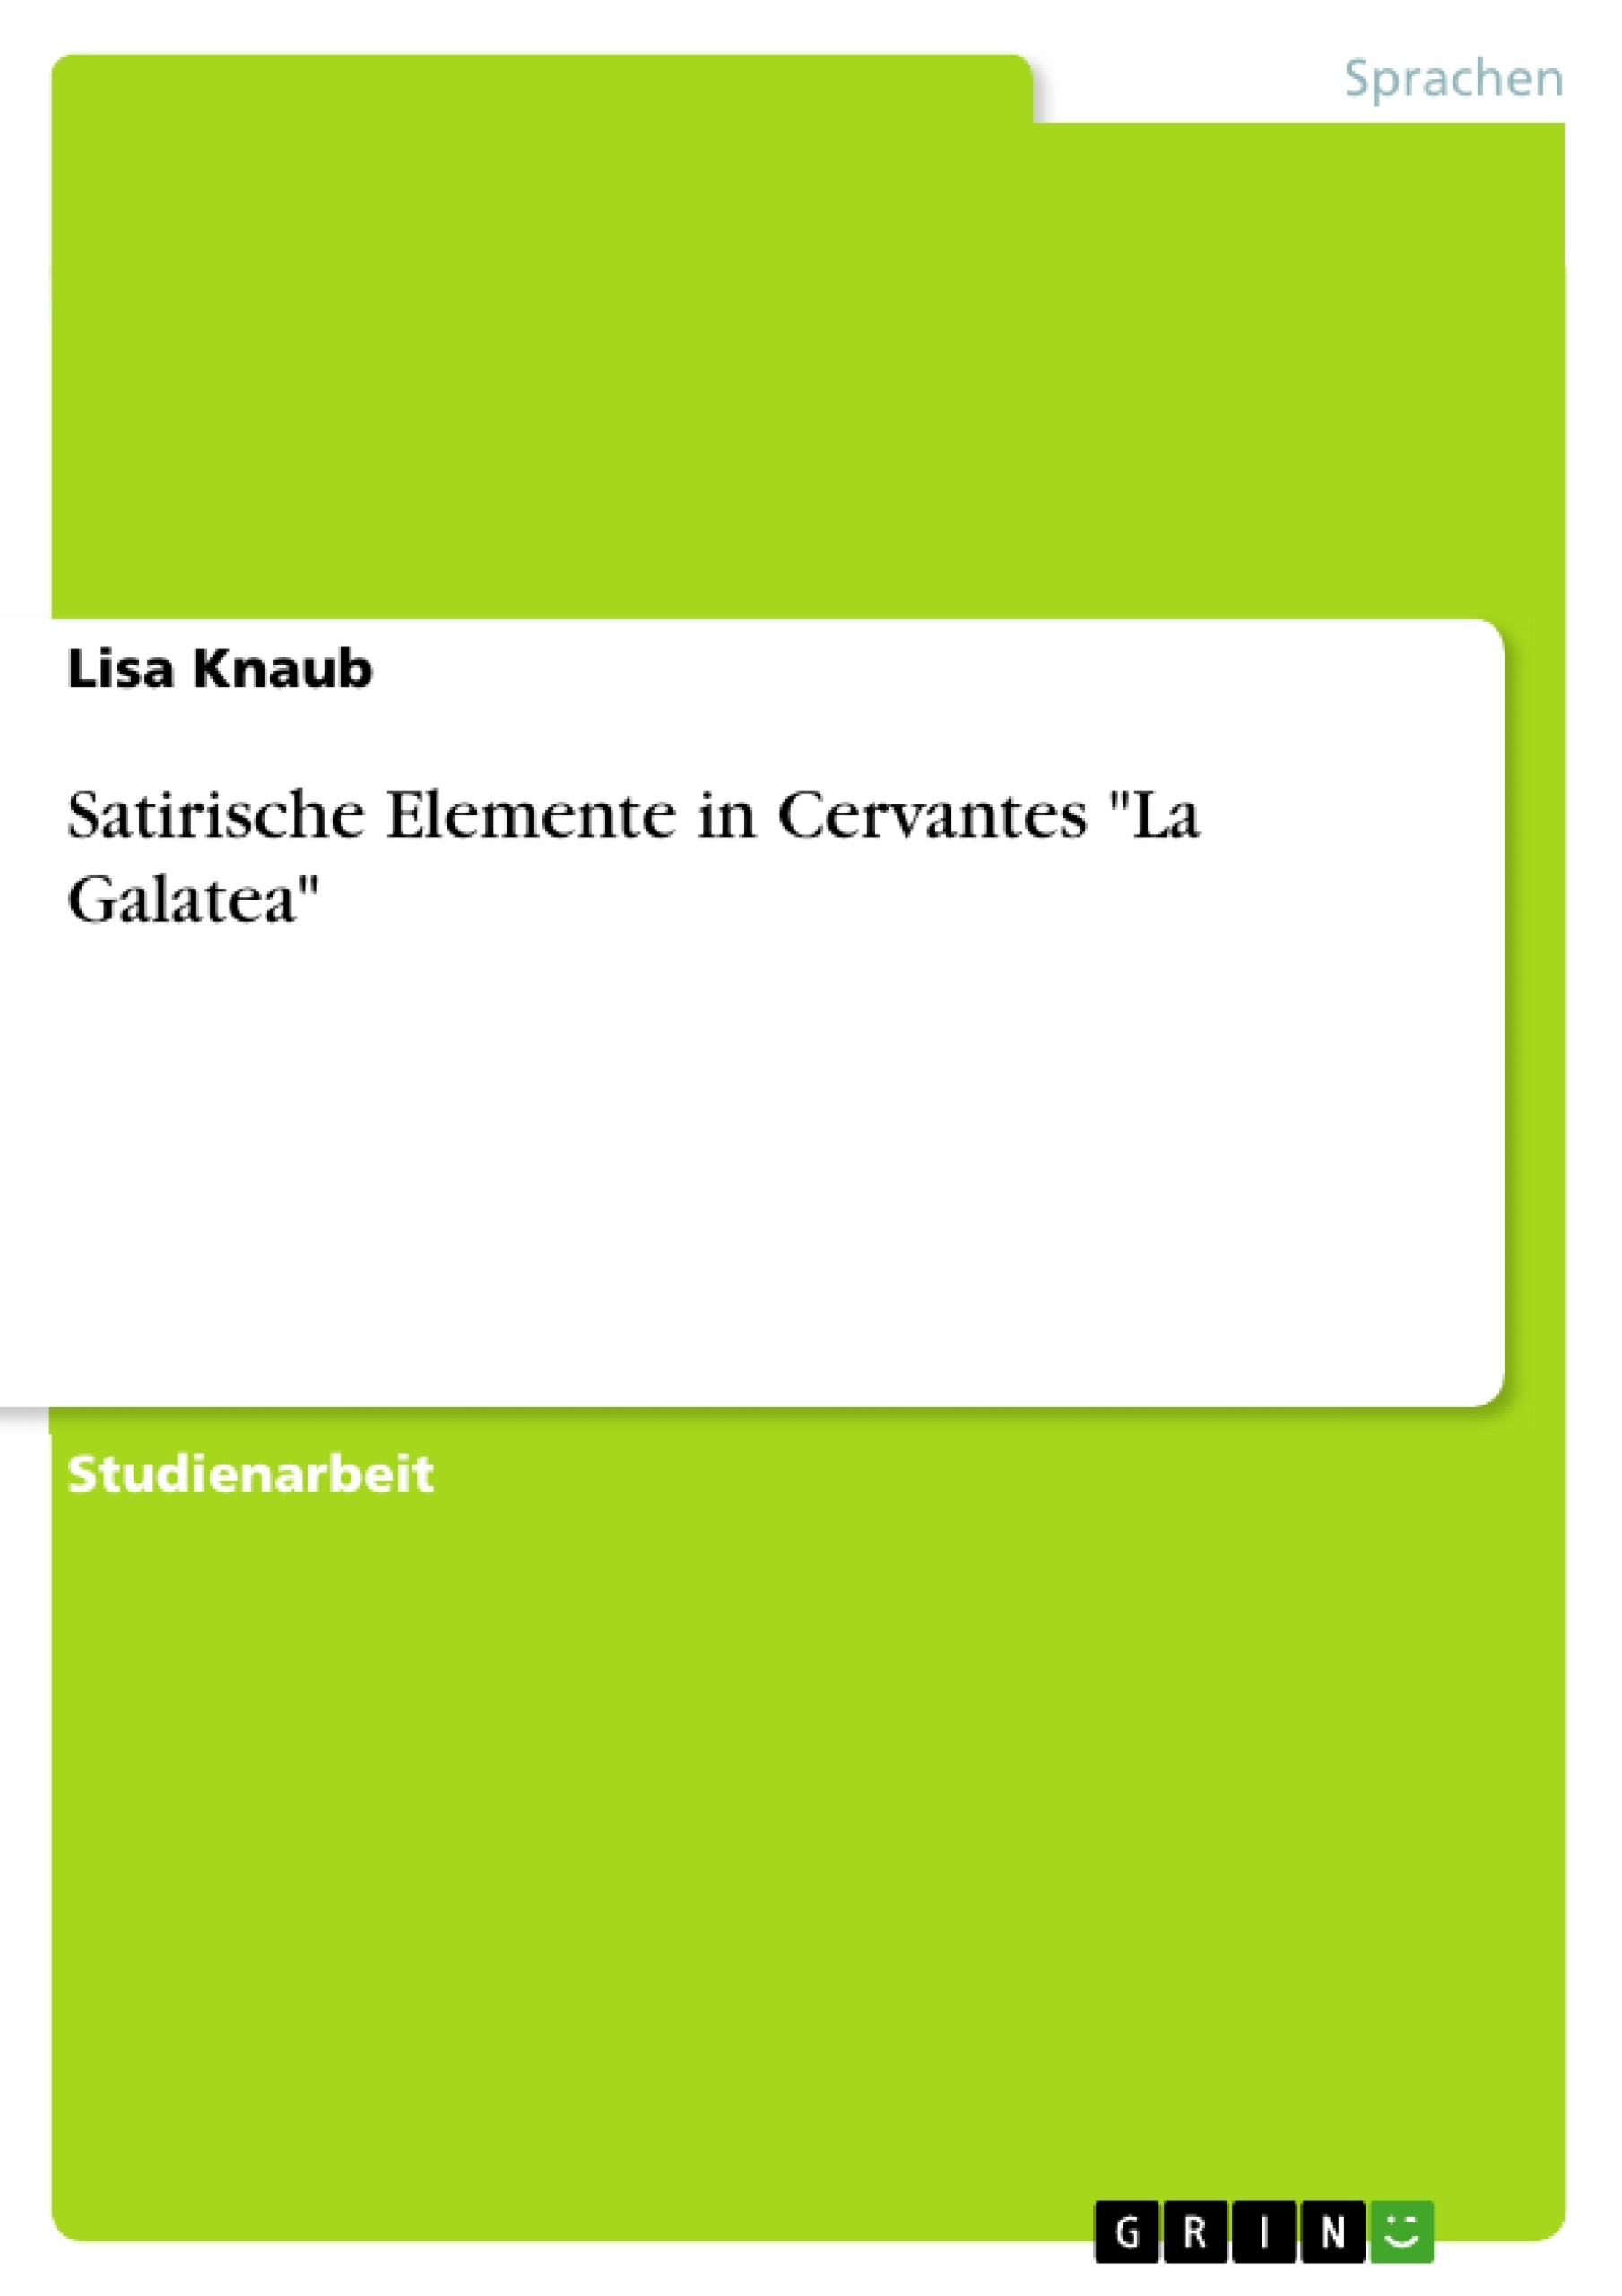 Título: Satirische Elemente in Cervantes "La Galatea"